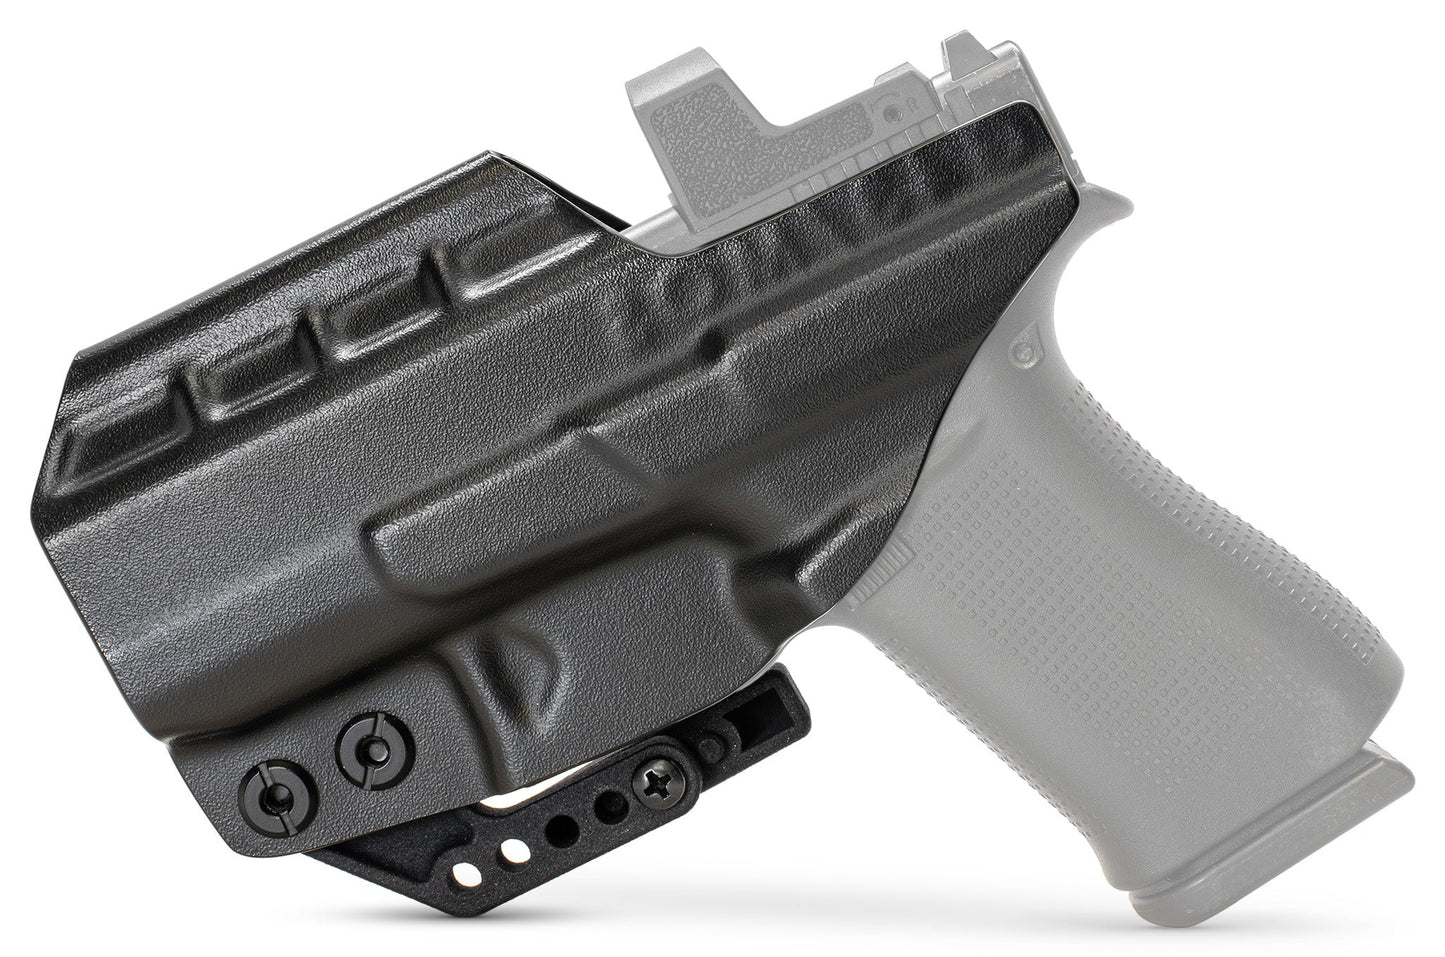 Smith & Wesson M&P M2.0 Full Size 4.25" PATH IWB CYA Supply Co.